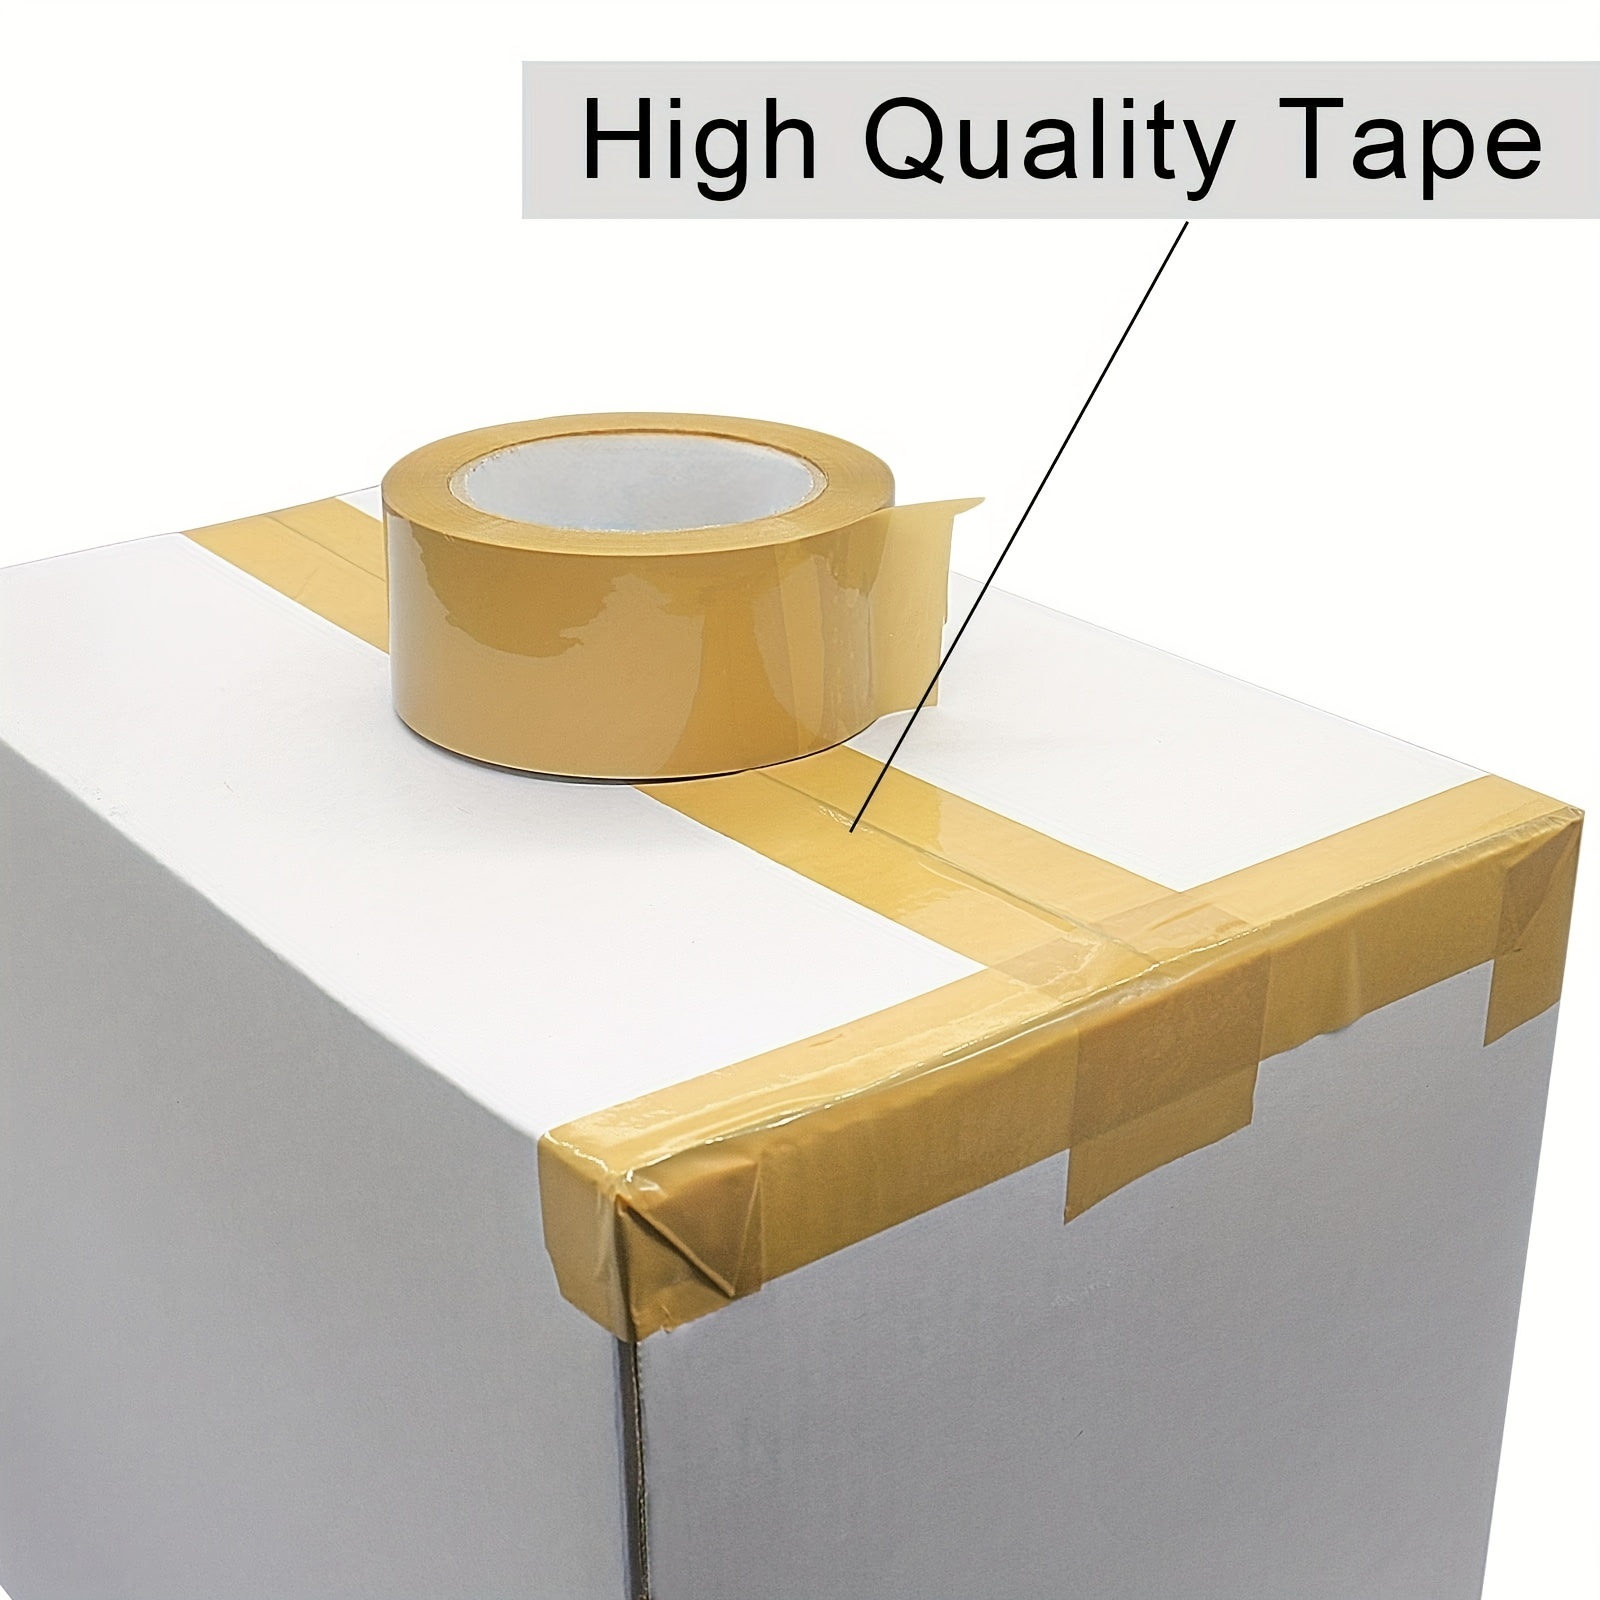 Bulk Packing Tape  Packing Tape Rolls 